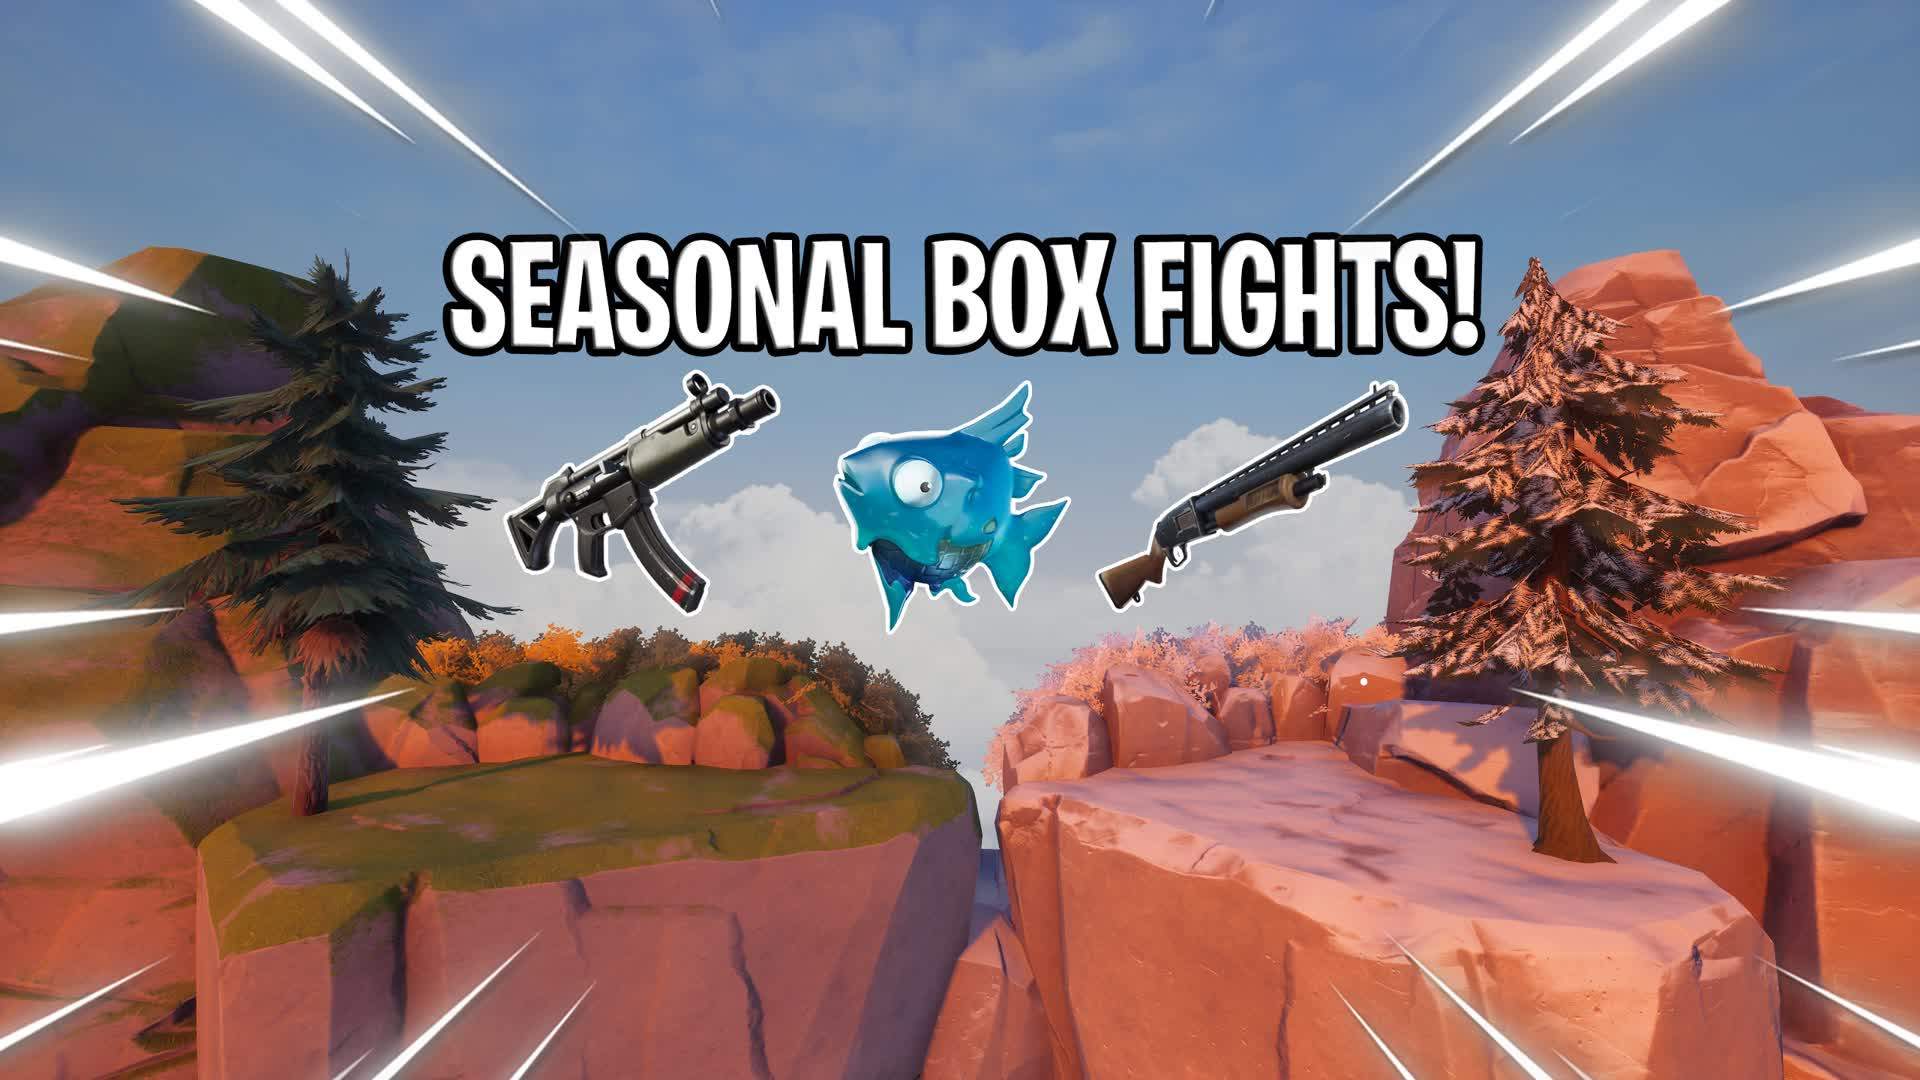 Seasonal Box Fights!